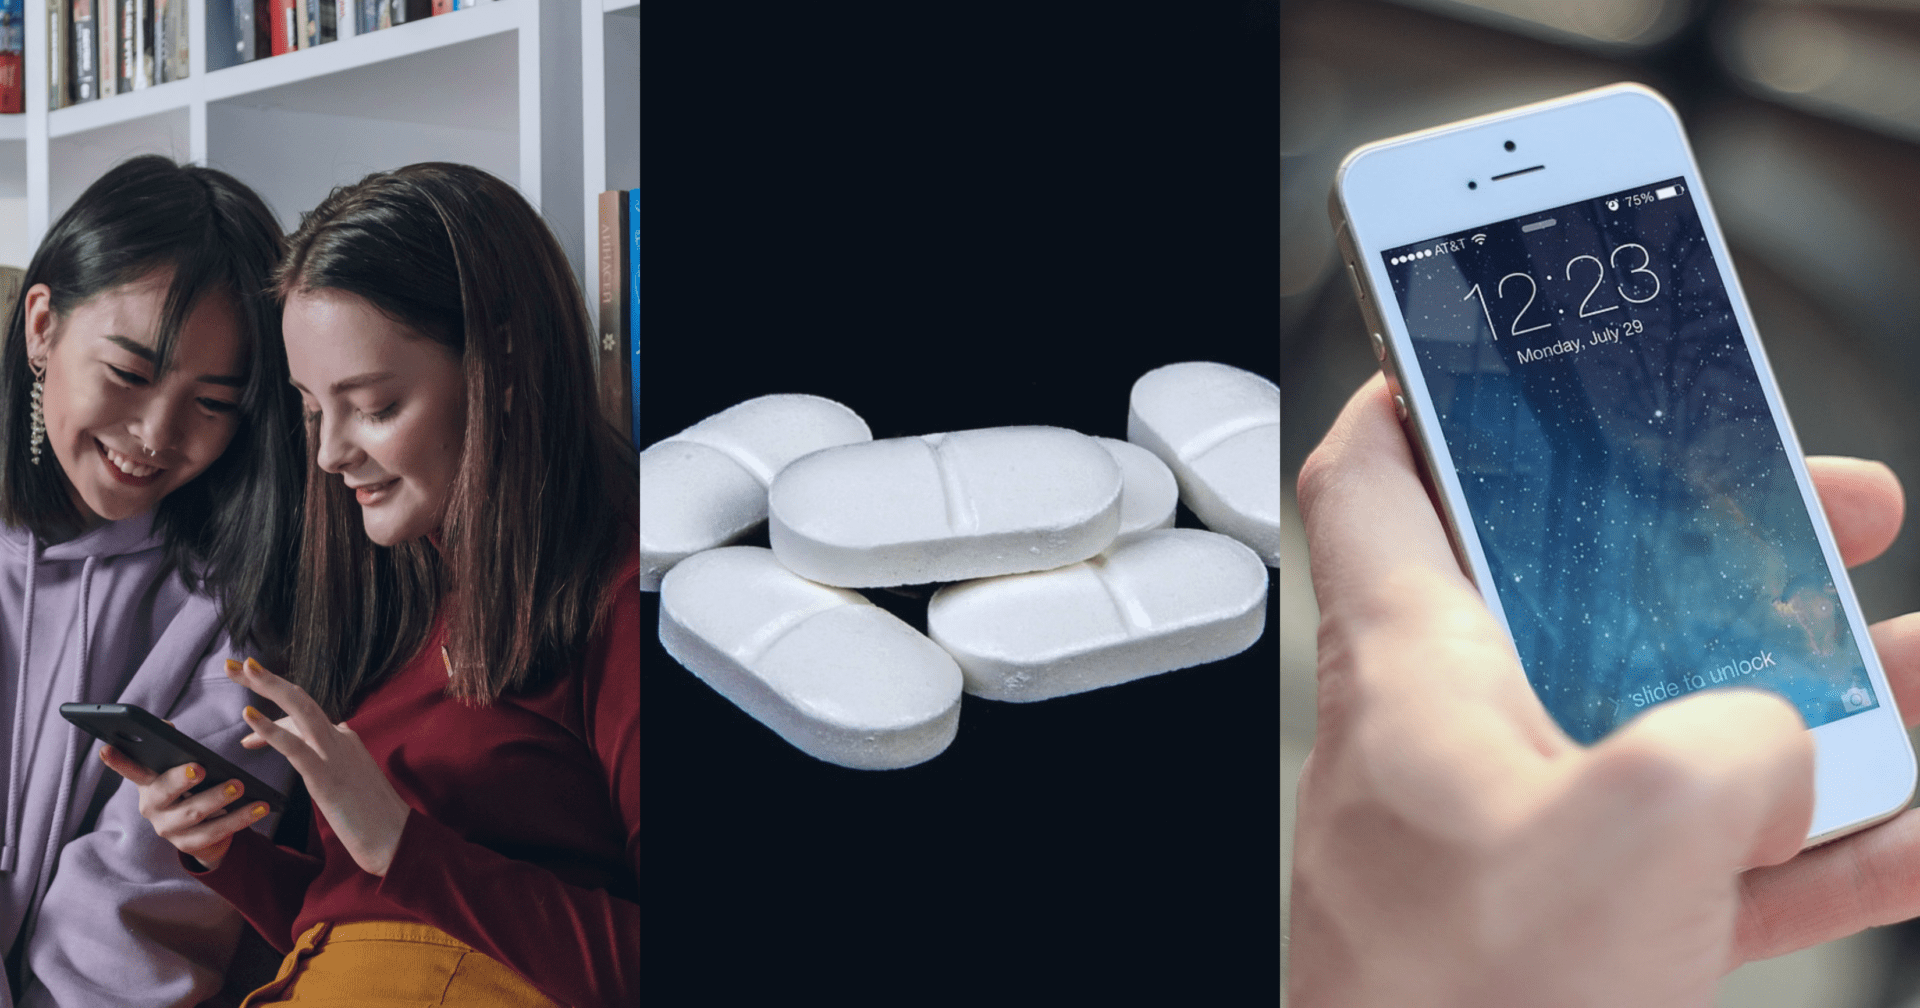 Dwie nastolatki patrzą w ekran smartfona, obok tabletki paracetamolu, a dalej dłoń trzymająca telefon komórkowy